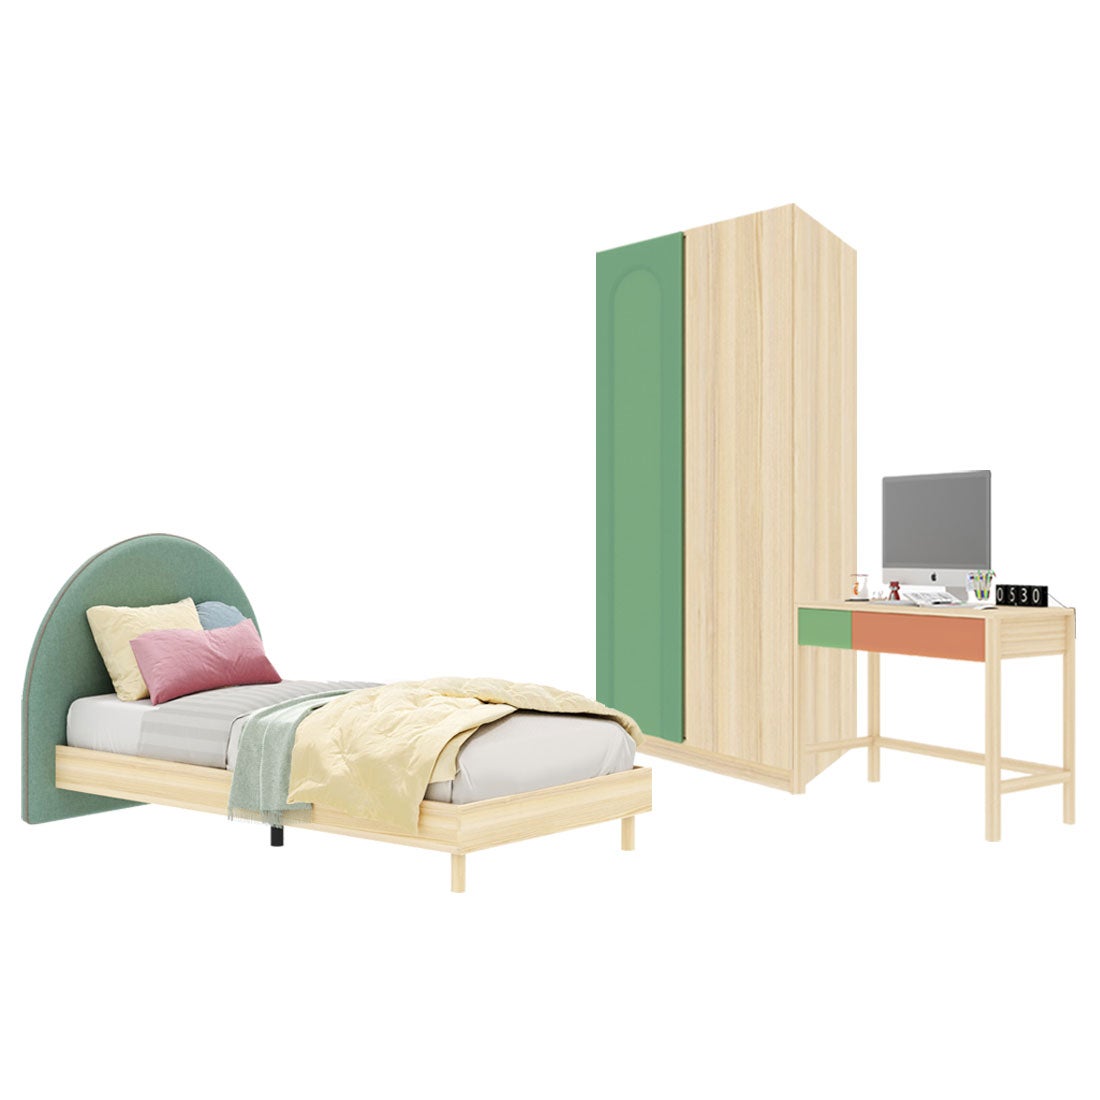 ชุดห้องนอน ขนาด 3.5 ฟุต-เบาะเขียว รุ่น Bingsoo & ตู้เสื้อผ้า 90 ซม. สีเขียว01